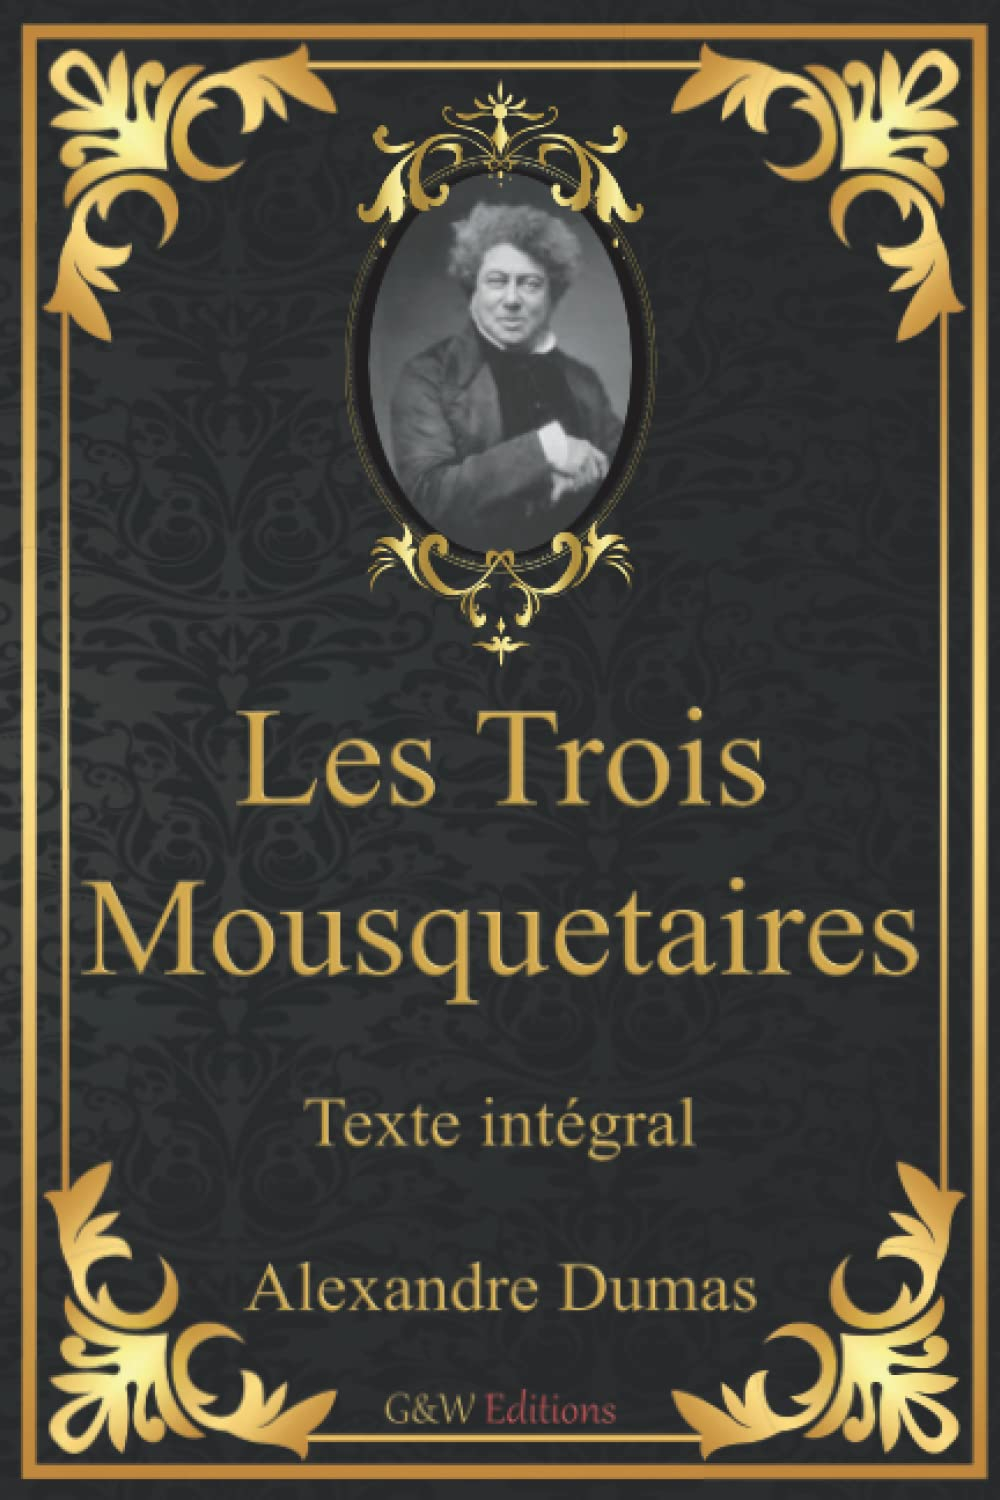 Les Trois Mousquetaires: Alexandre Dumas | Père | Texte intégral | G&W Editions | (Annoté)